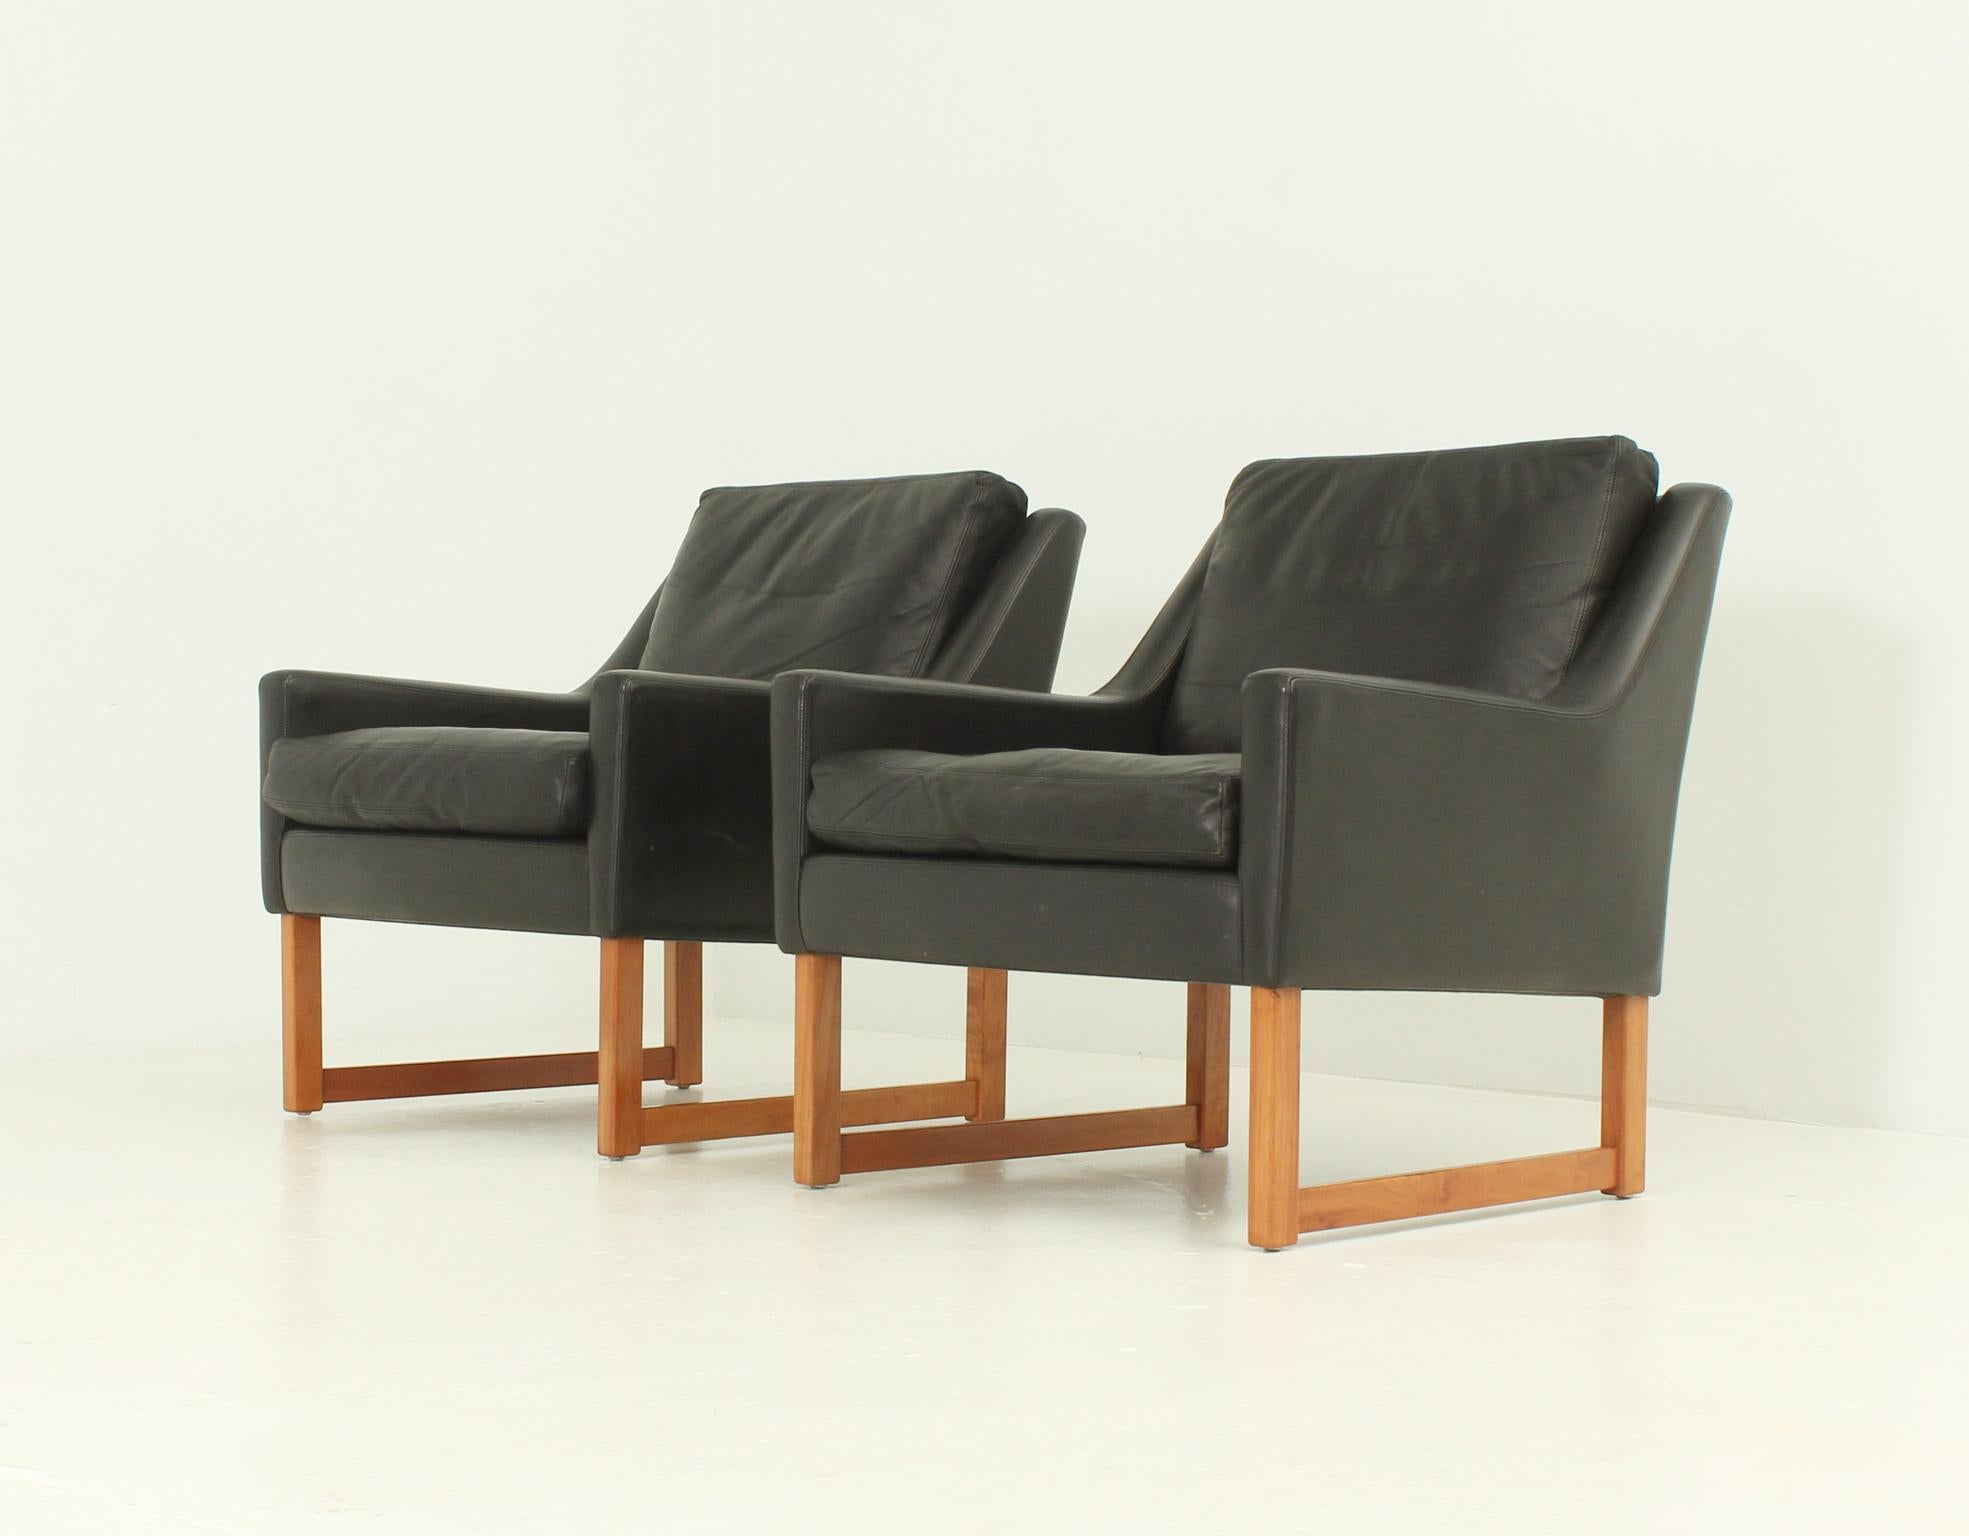 Paire de fauteuils conçus dans les années 1960 par Rudolf Bernd Glatzel pour Kill International, Allemagne. Structure en bois recouverte de cuir aniline noir avec coussins amovibles.